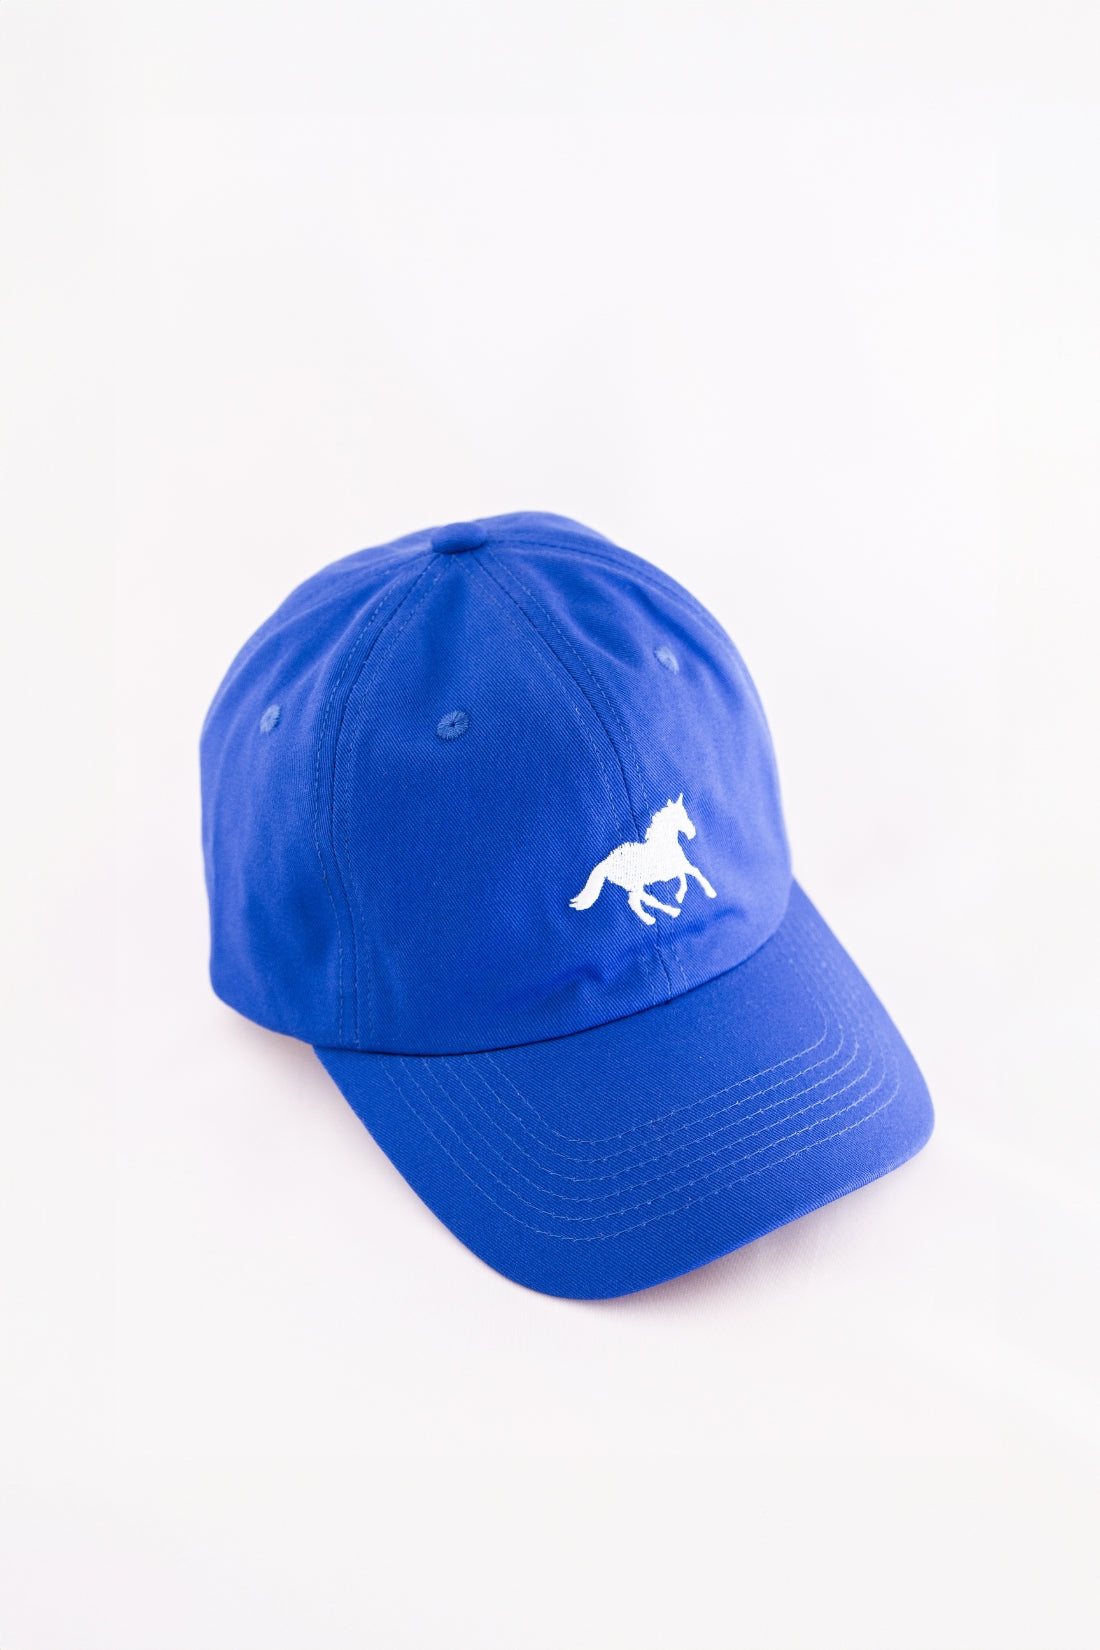 Horse Girl Cap | Blue/White